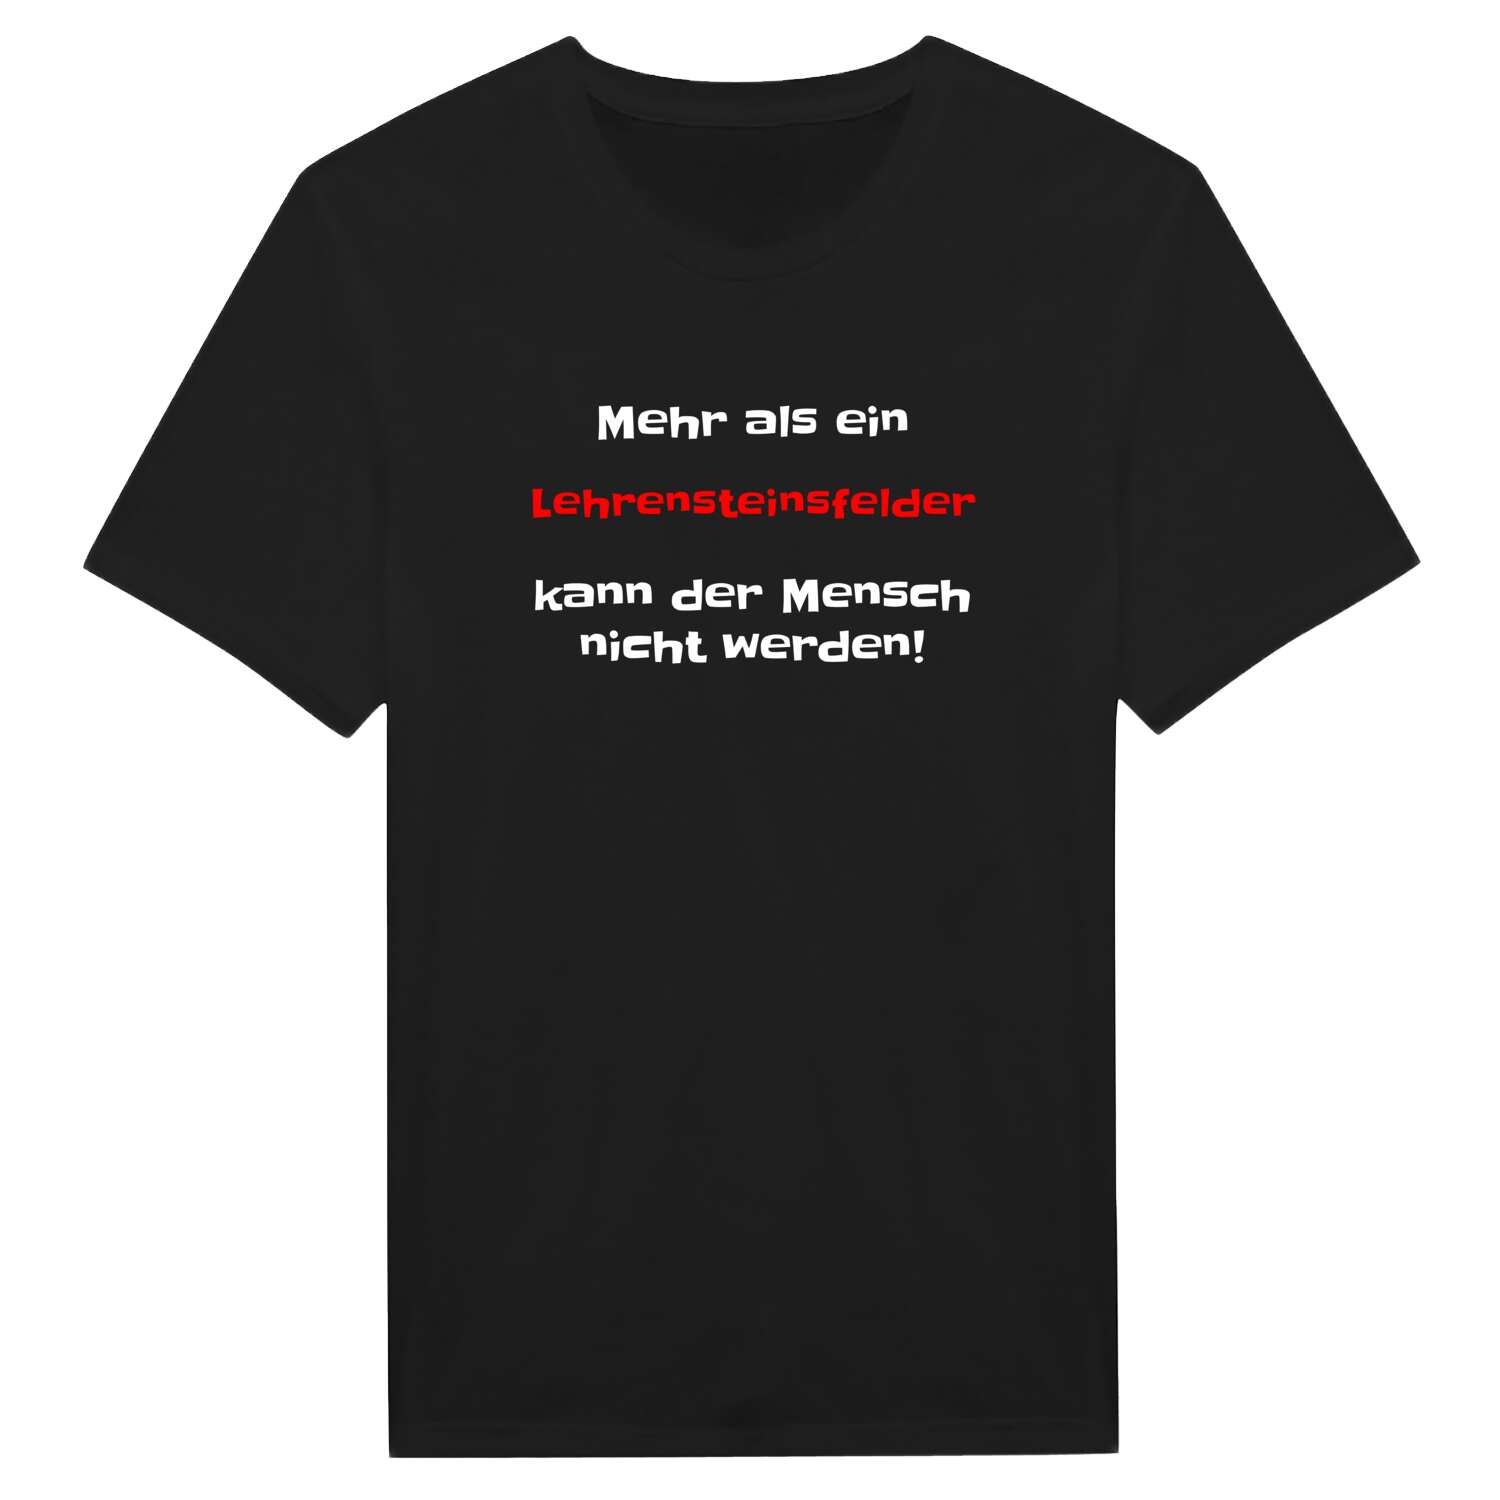 Lehrensteinsfeld T-Shirt »Mehr als ein«